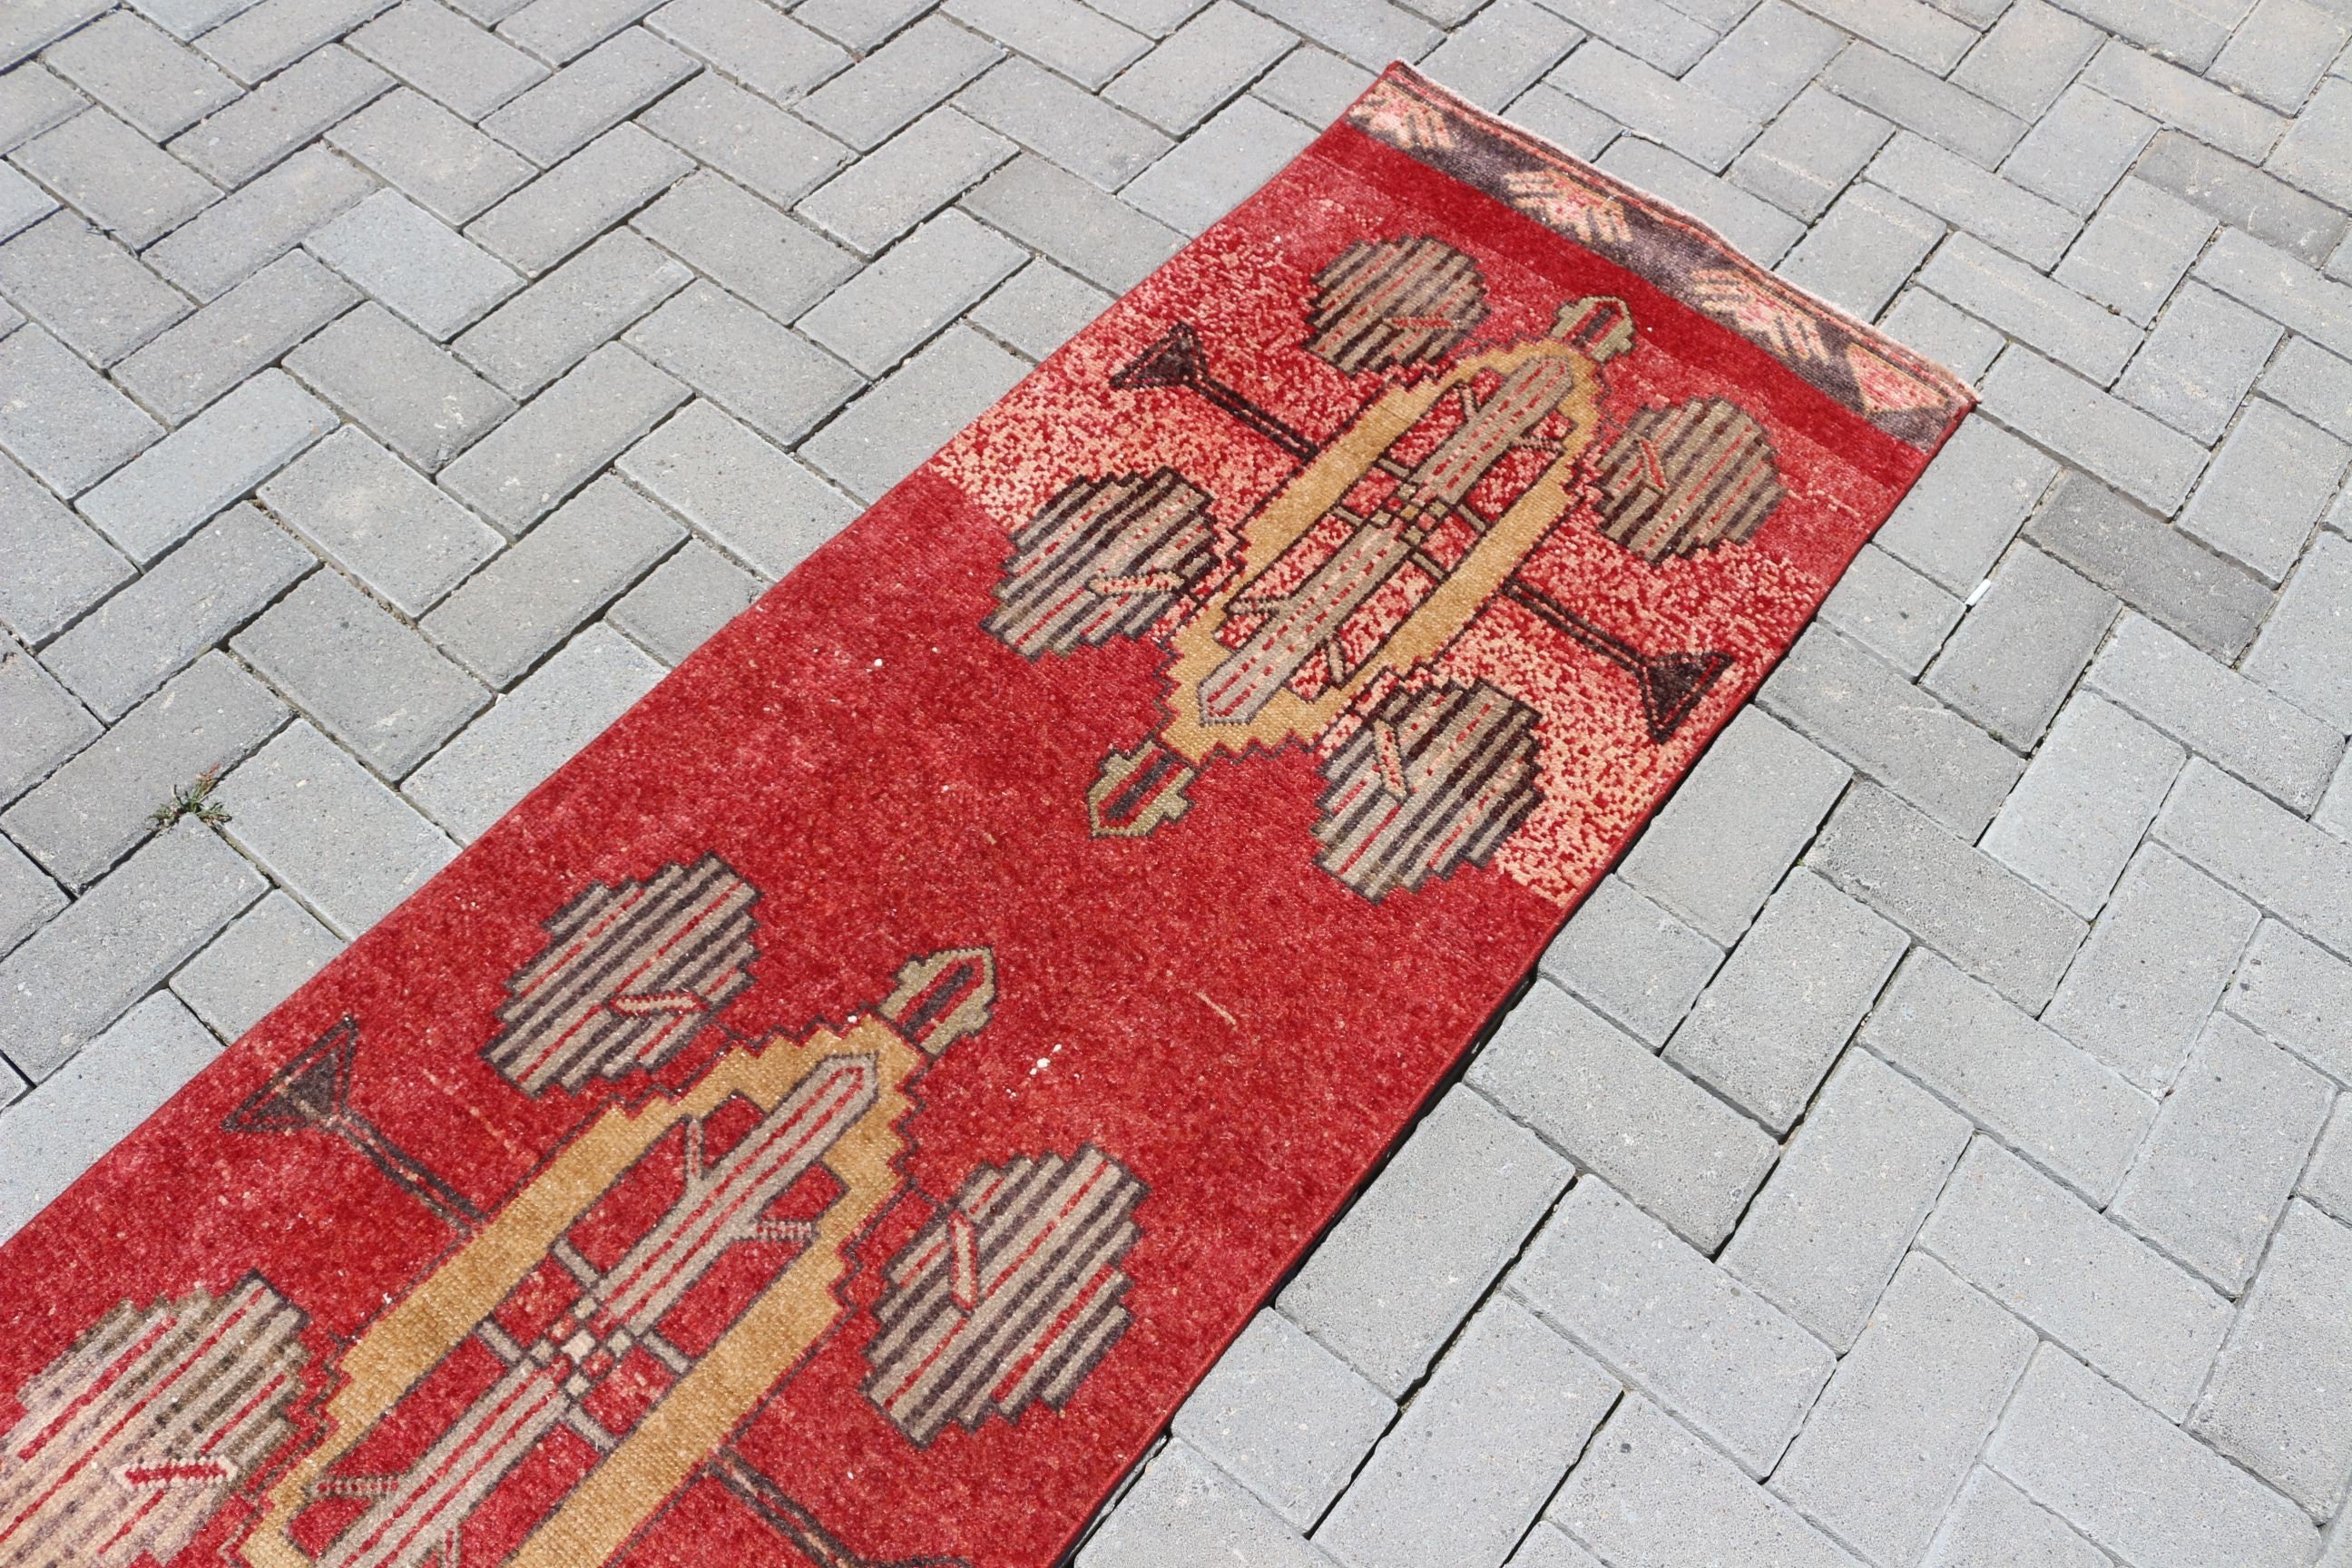 Turkish Rug, Rugs for Corridor, Red Moroccan Rugs, 2x13.5 ft Runner Rug, Stair Rug, Floor Rugs, Corridor Rug, Vintage Rug, Oriental Rug